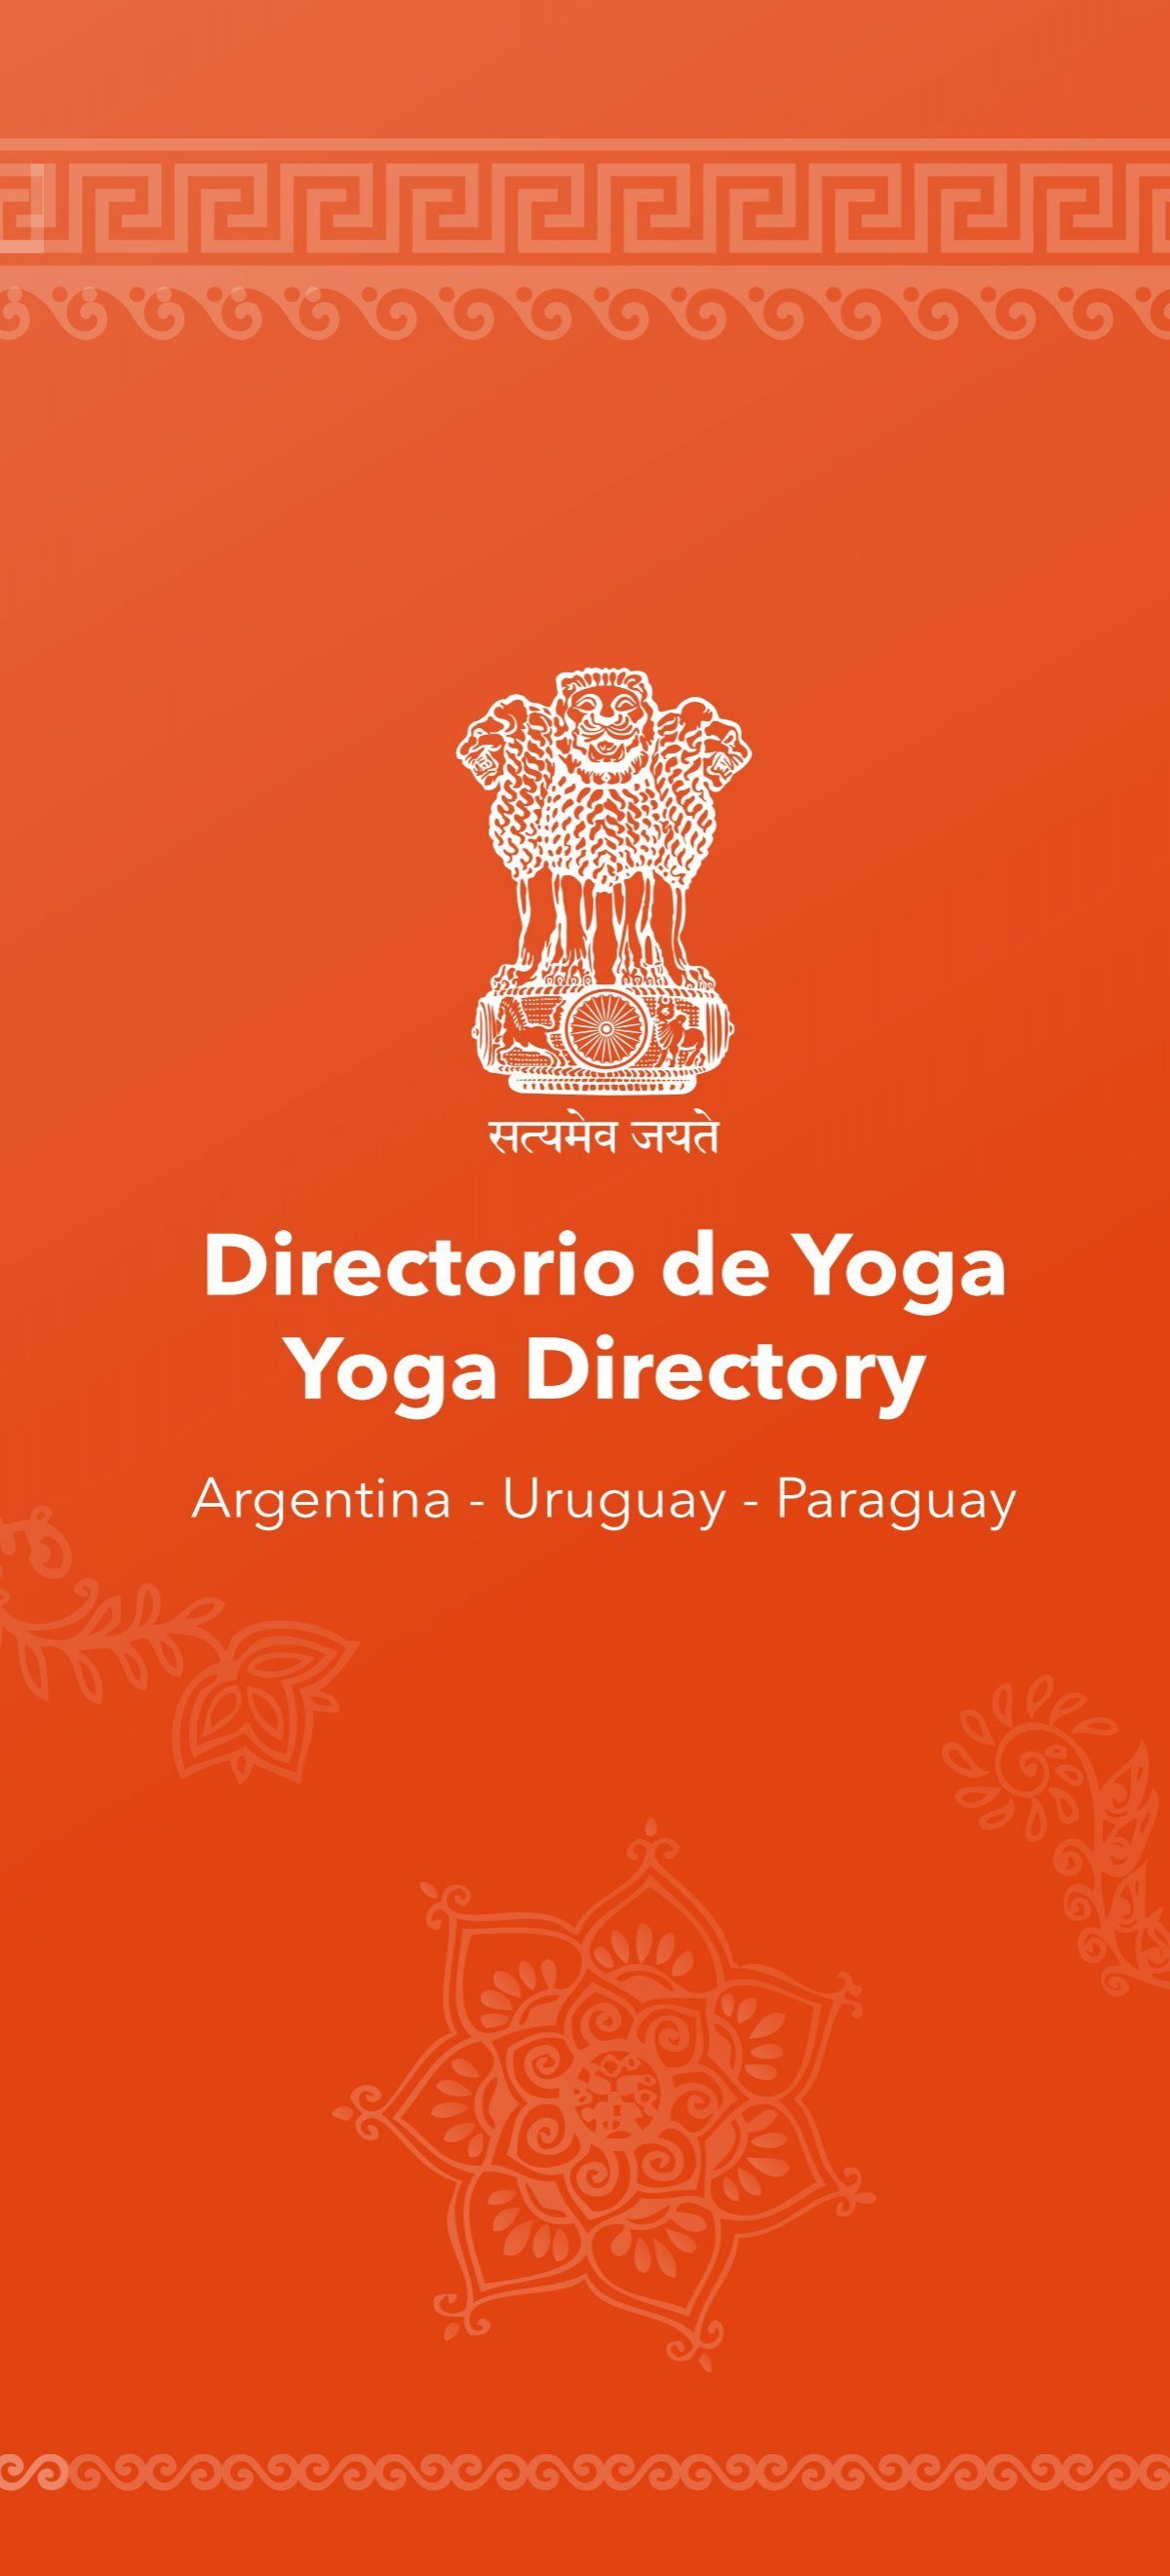 Centro Internacional de Yoga Integral